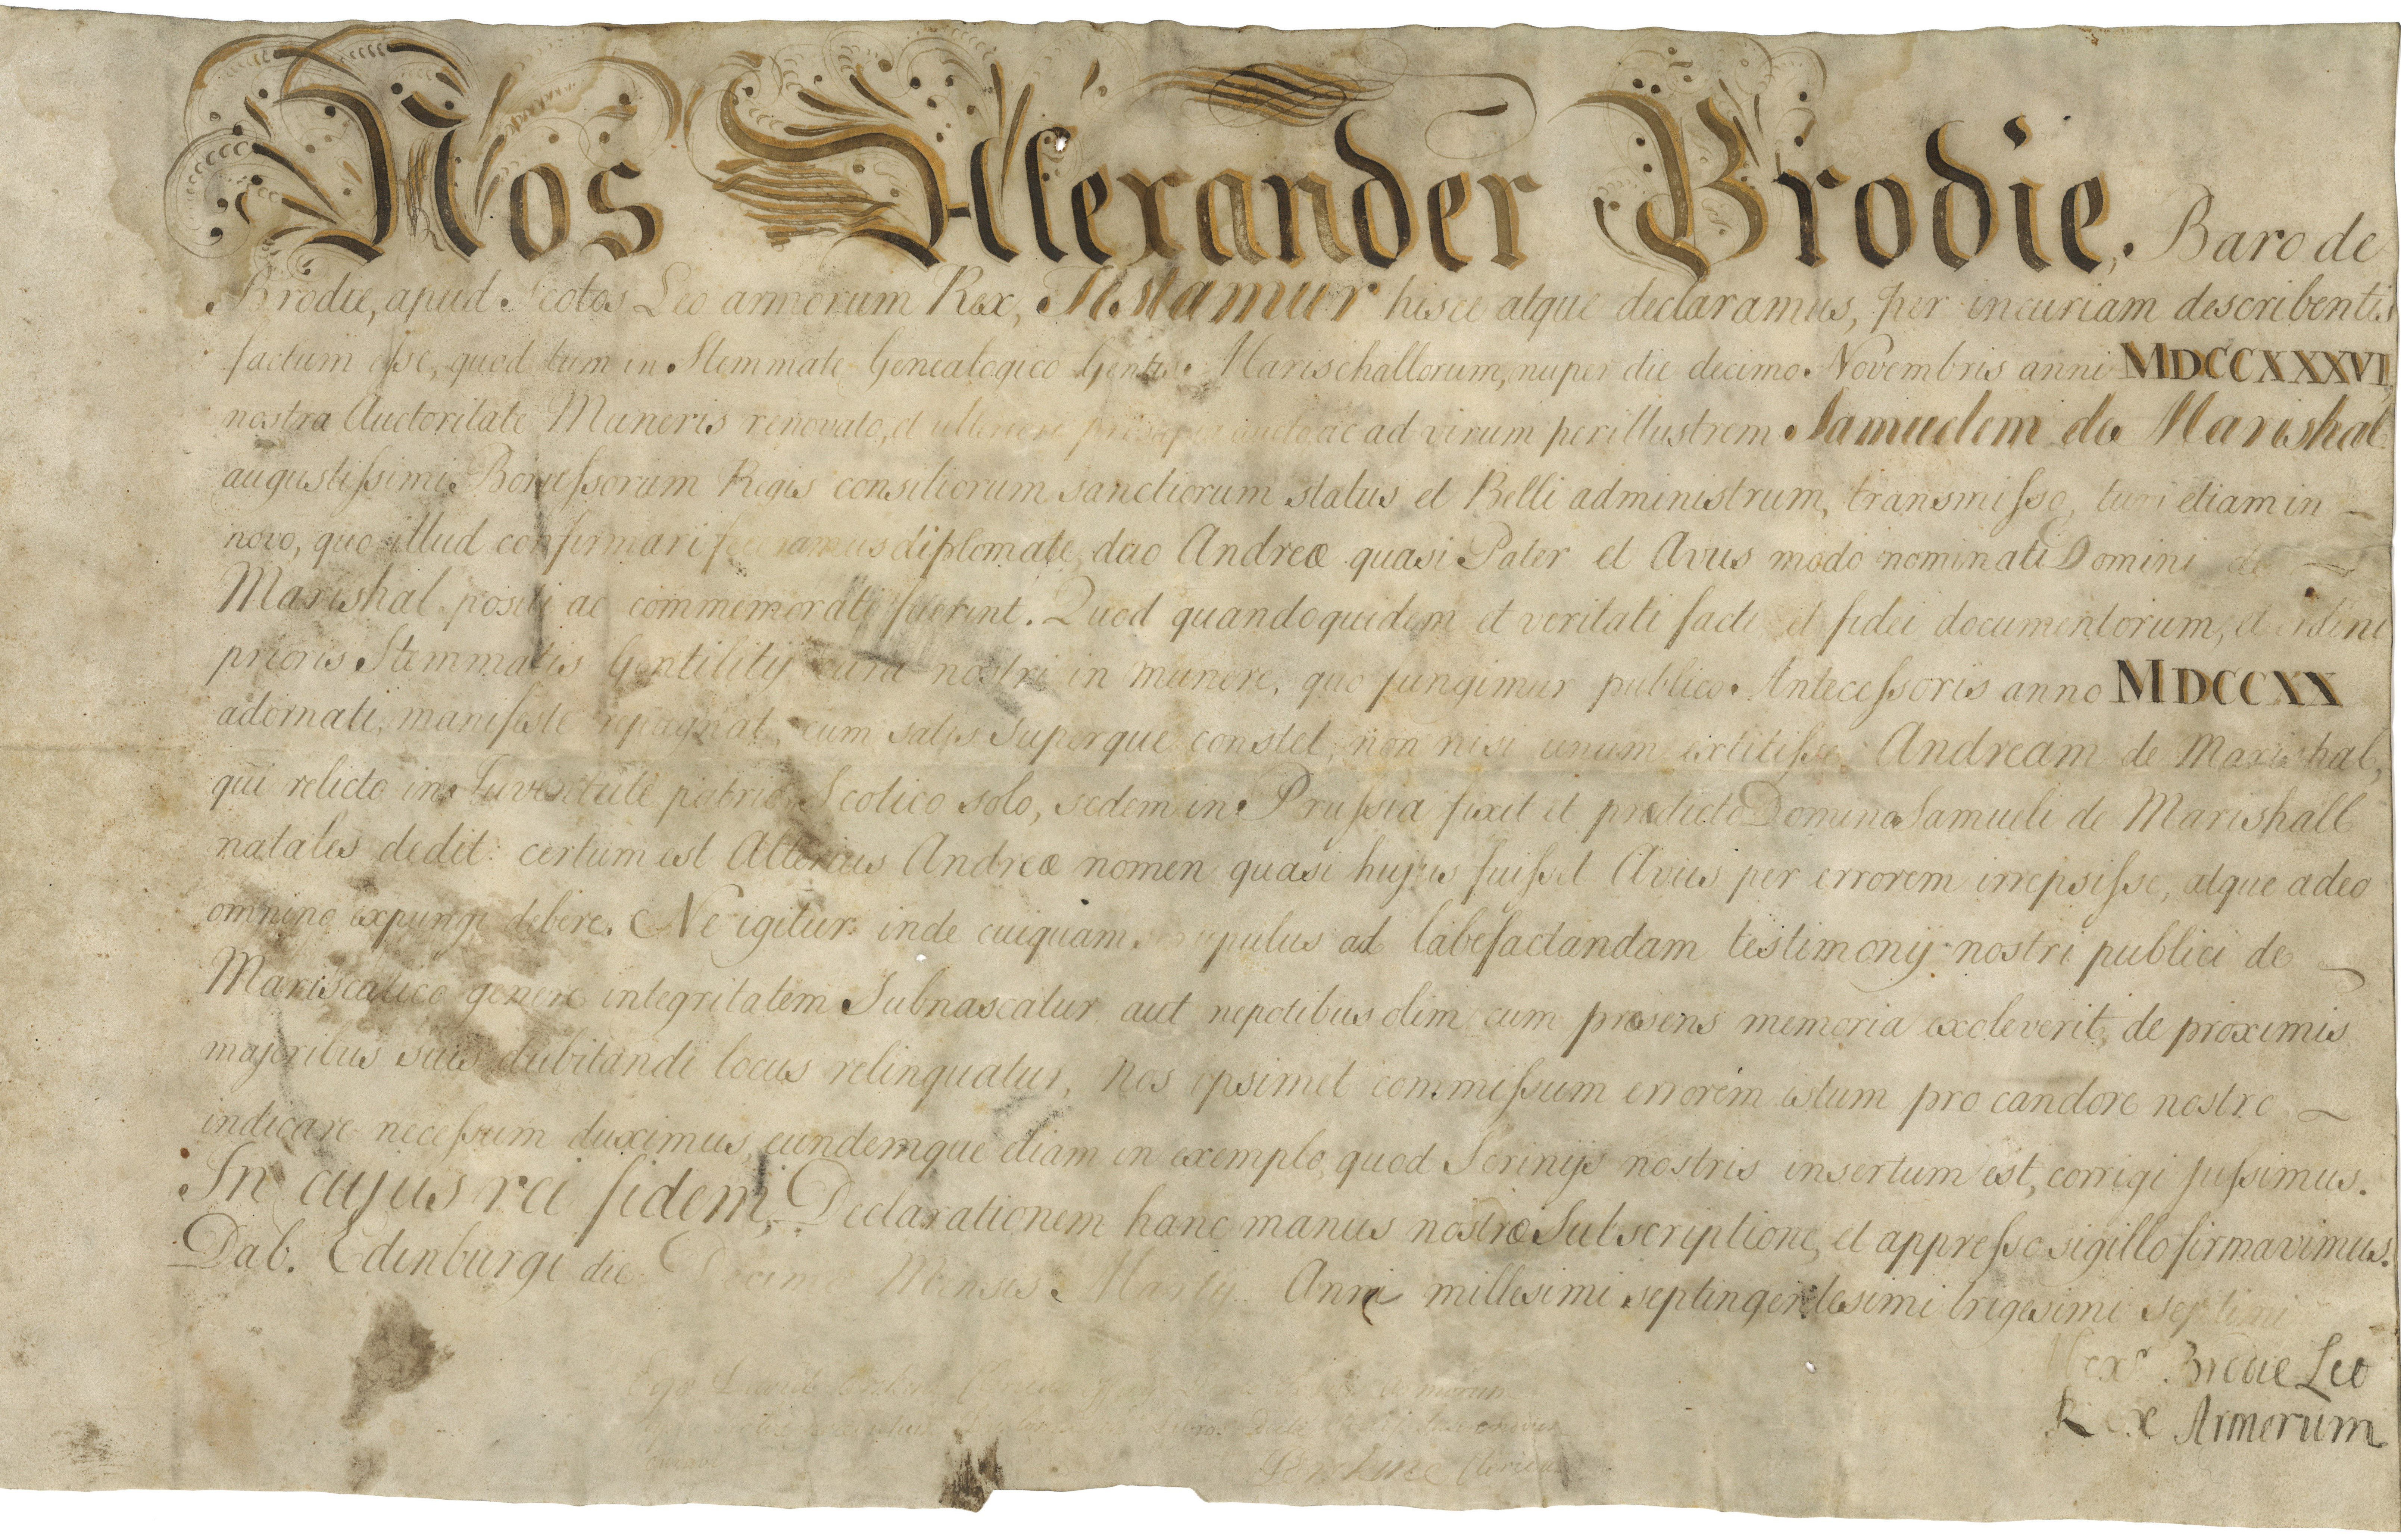 Urkunde über die Bestätigung der adligen Abkunft für Samuel von Marschall 1737 (Landesgeschichtliche Vereinigung für die Mark Brandenburg e.V., Archiv CC BY)